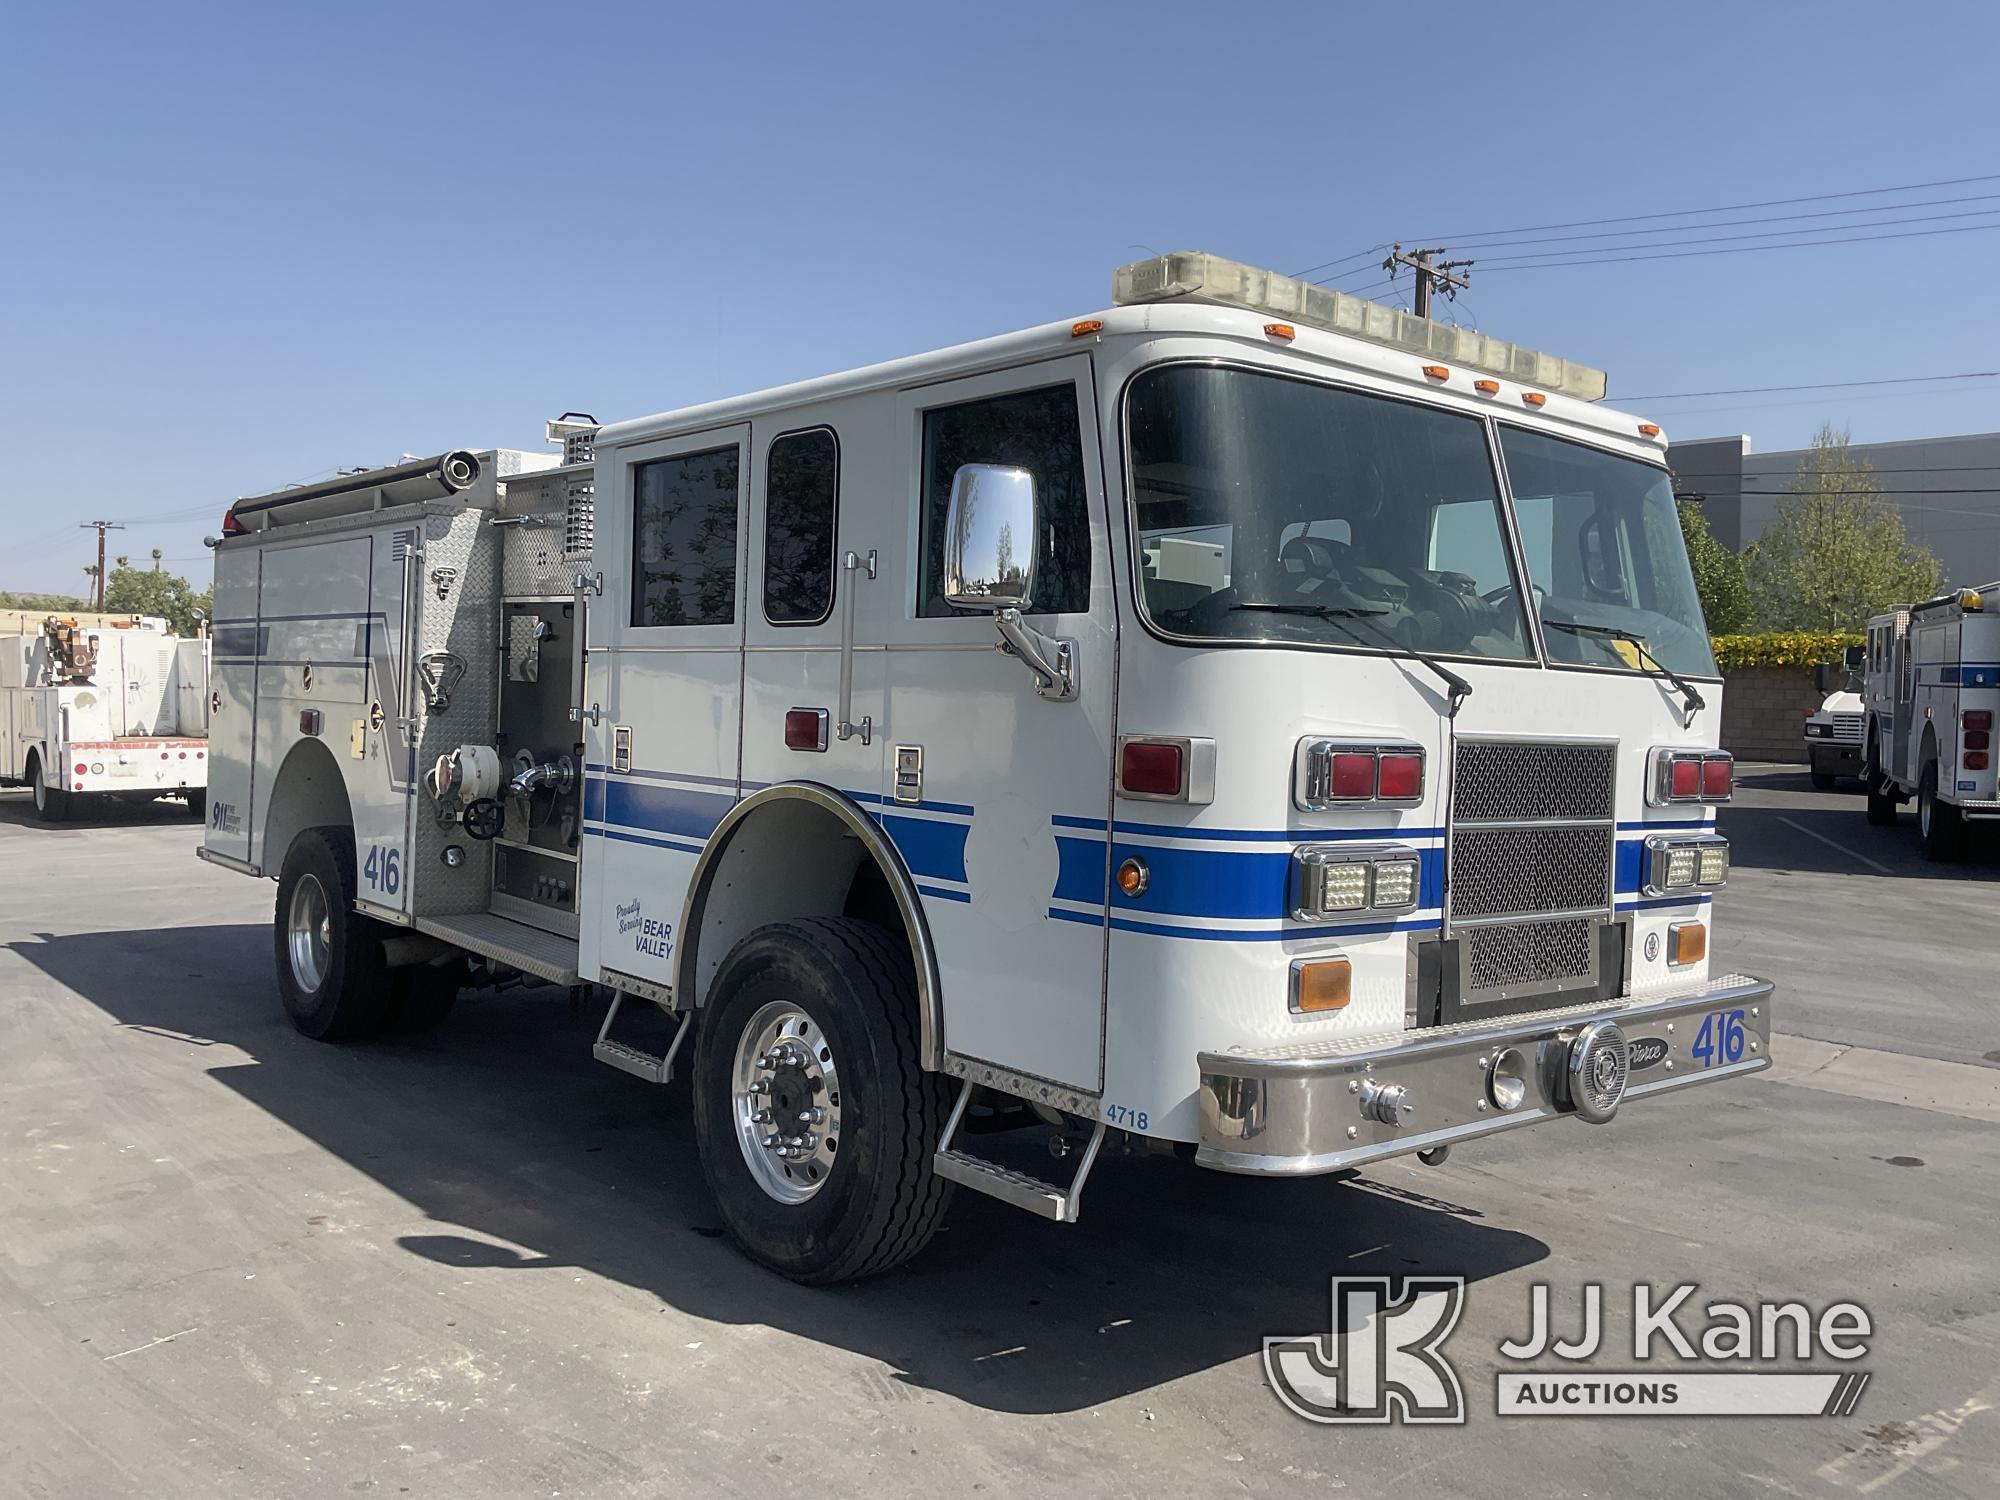 (Jurupa Valley, CA) 2005 Pierce Fire Truck 4X4 Pumper/Fire Truck Runs & Moves, Check Engine Light On